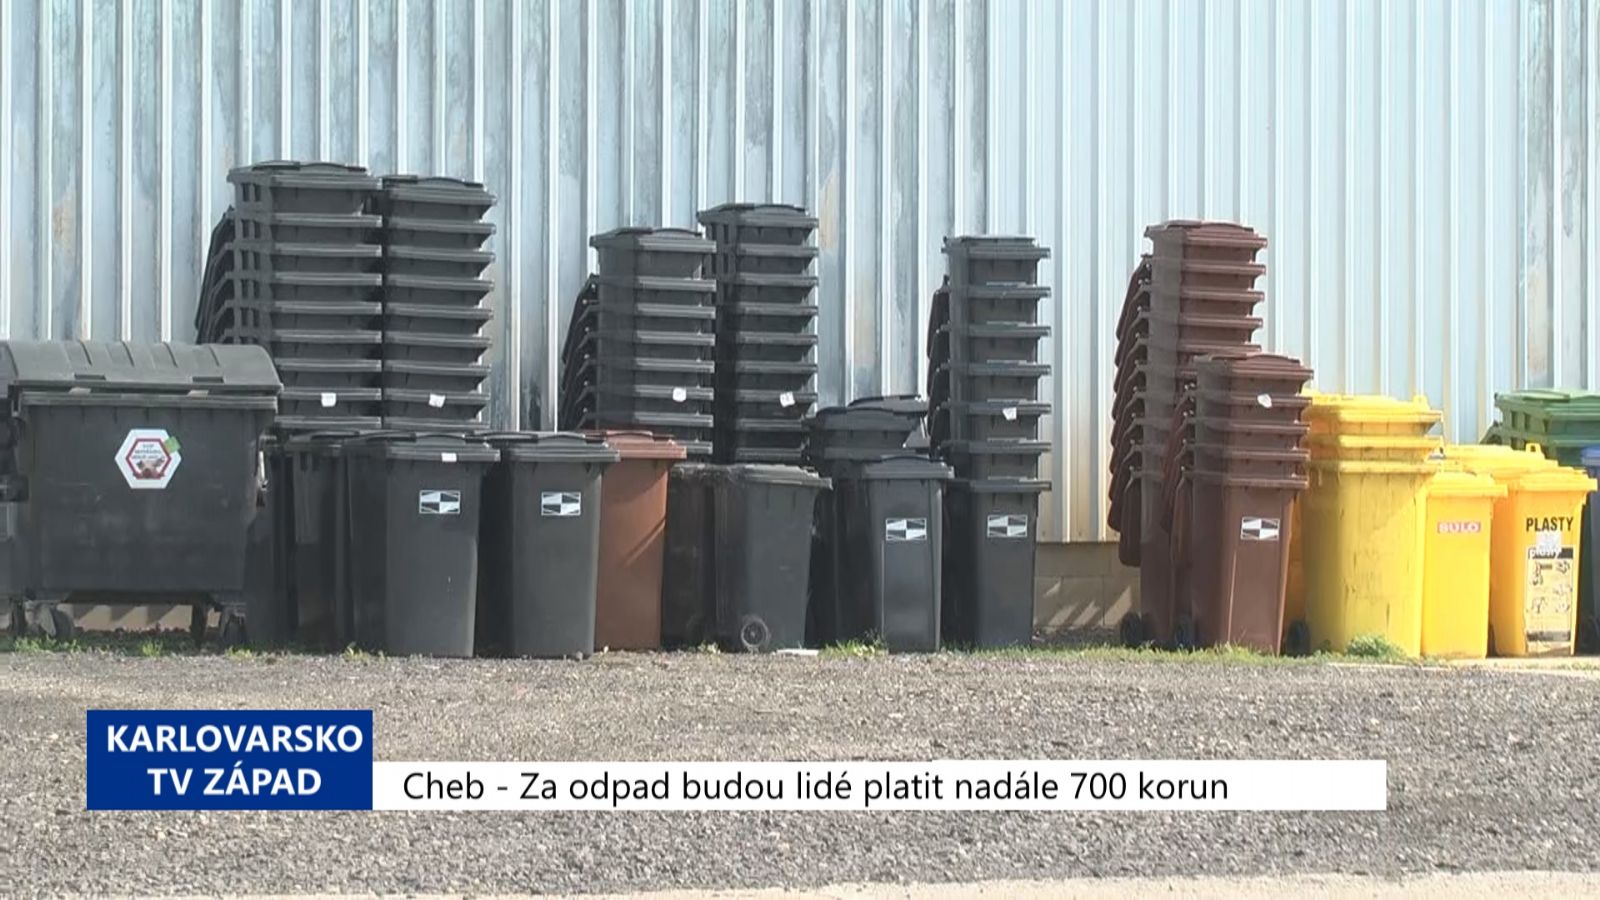 Cheb: Za odpad budou lidé platit nadále 700 korun ročně (TV Západ)